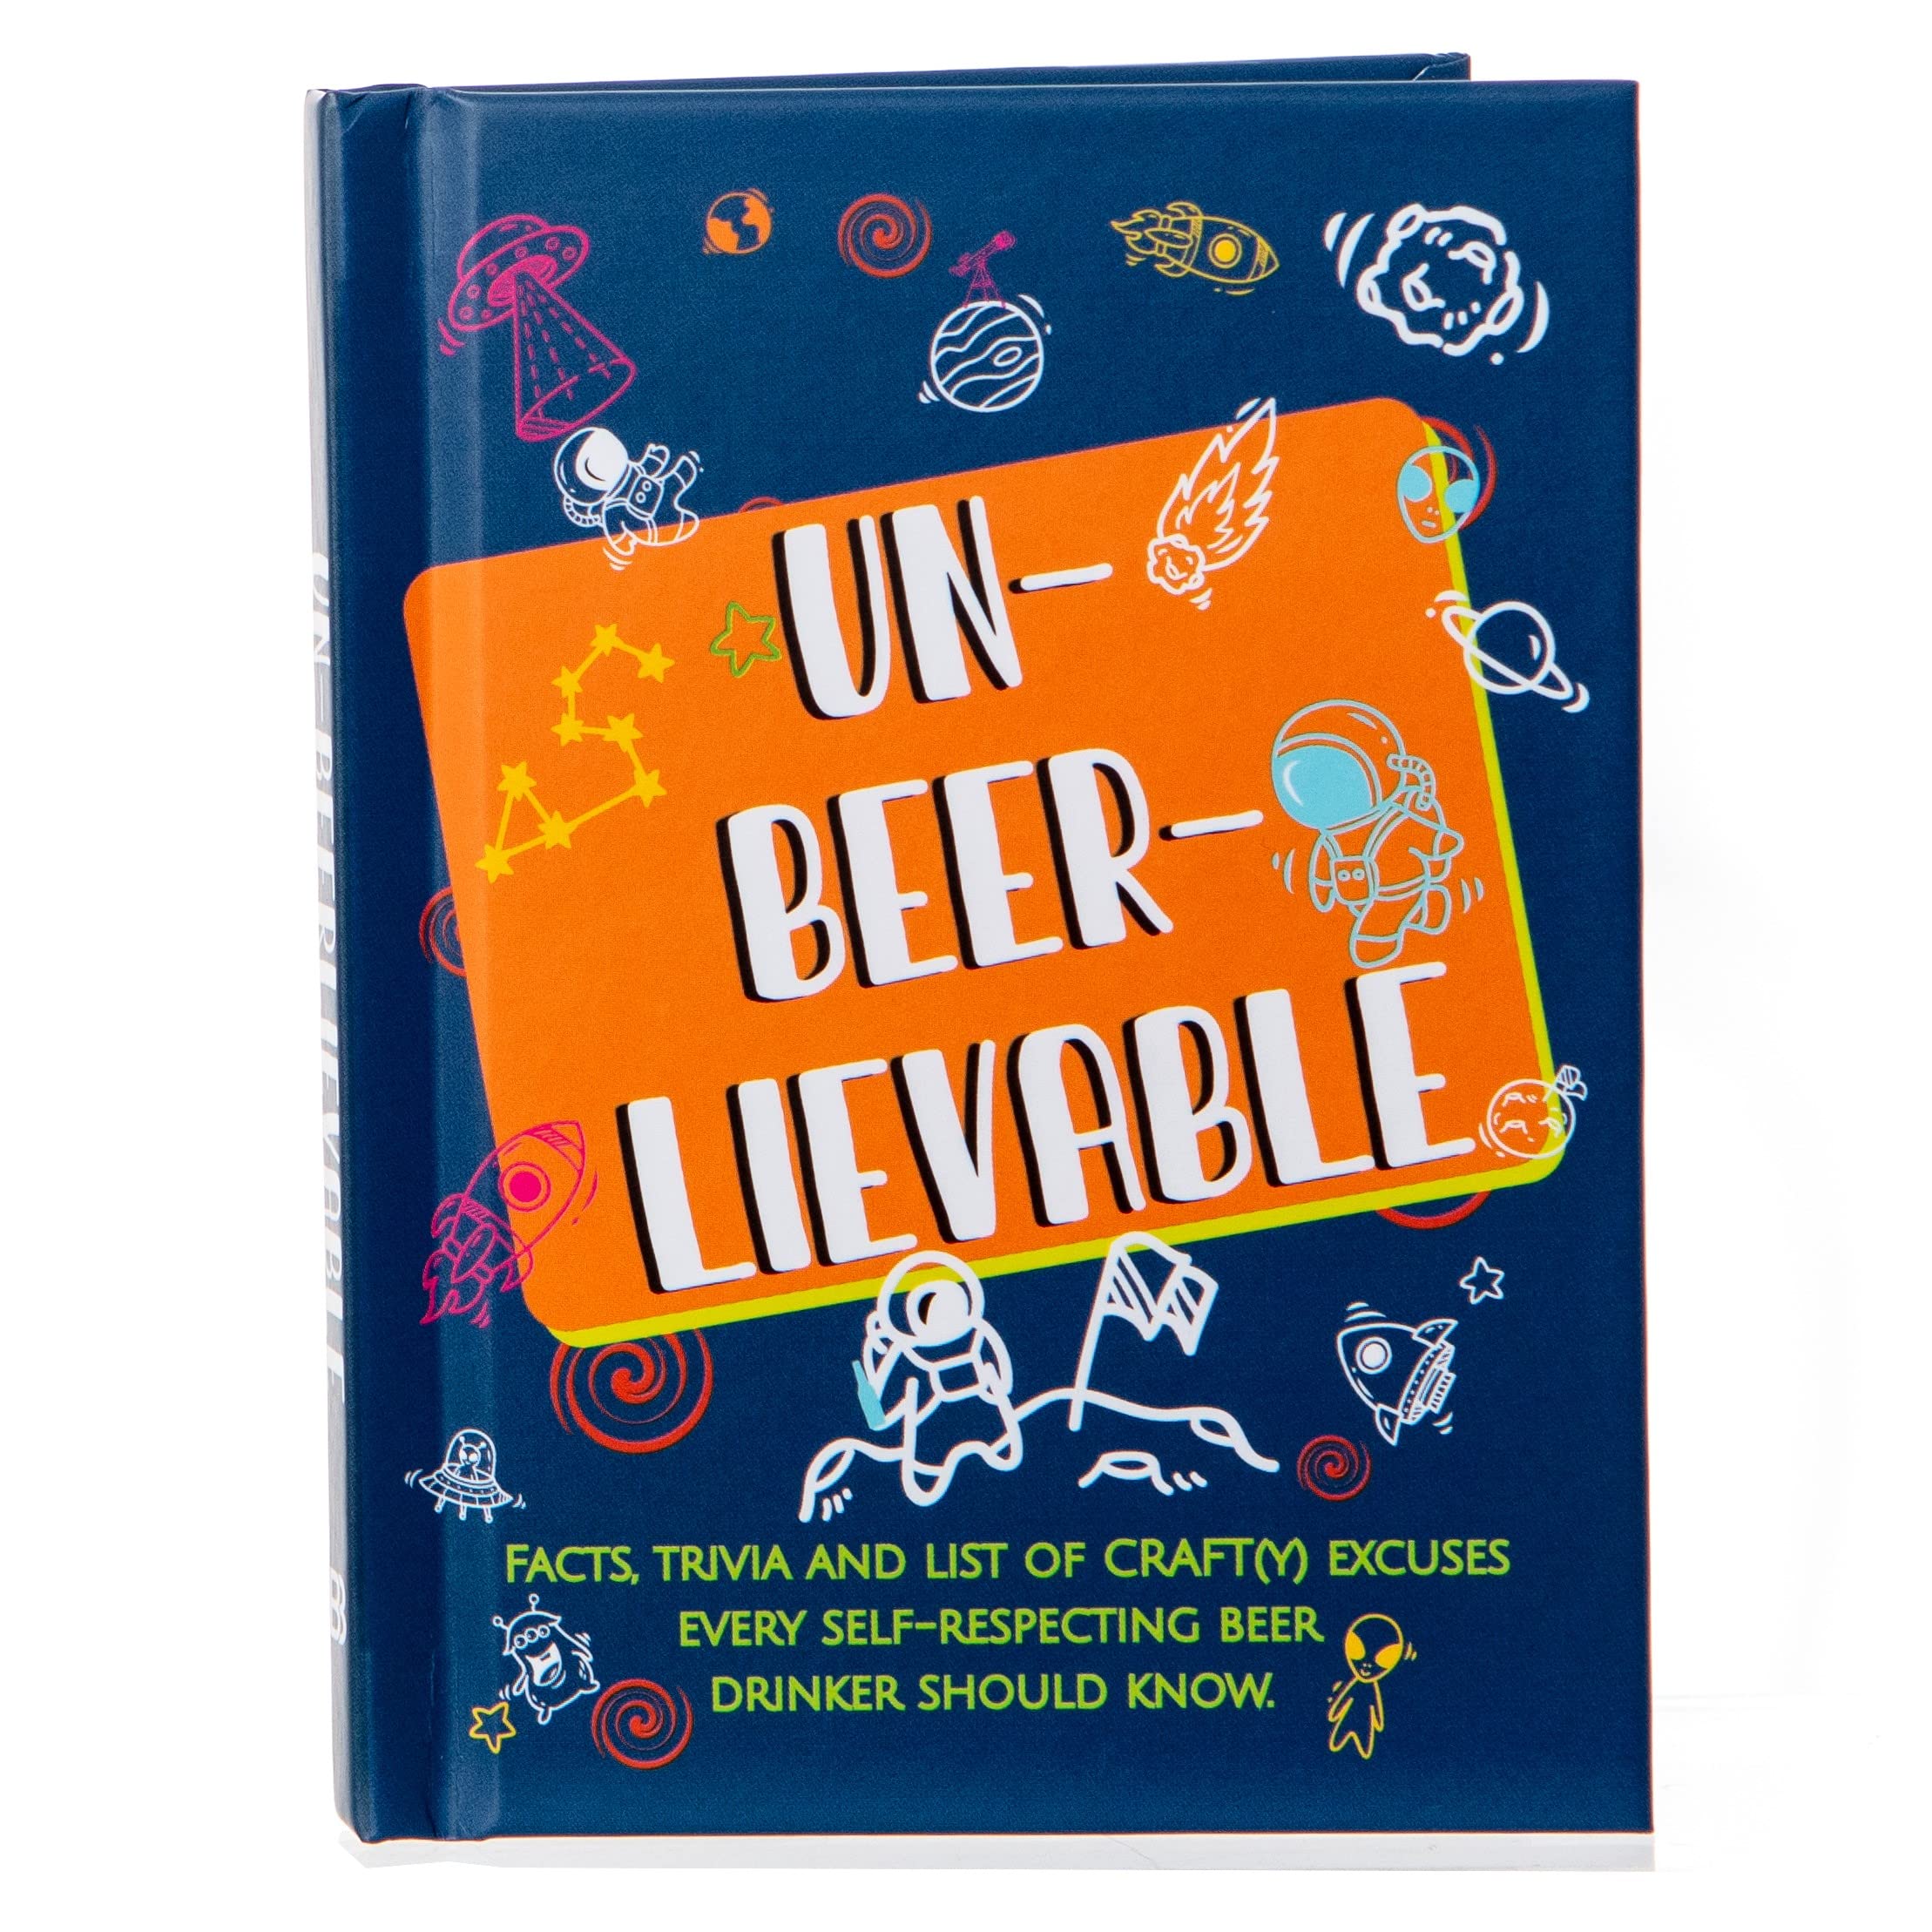 Un-Beer-Lievable Book